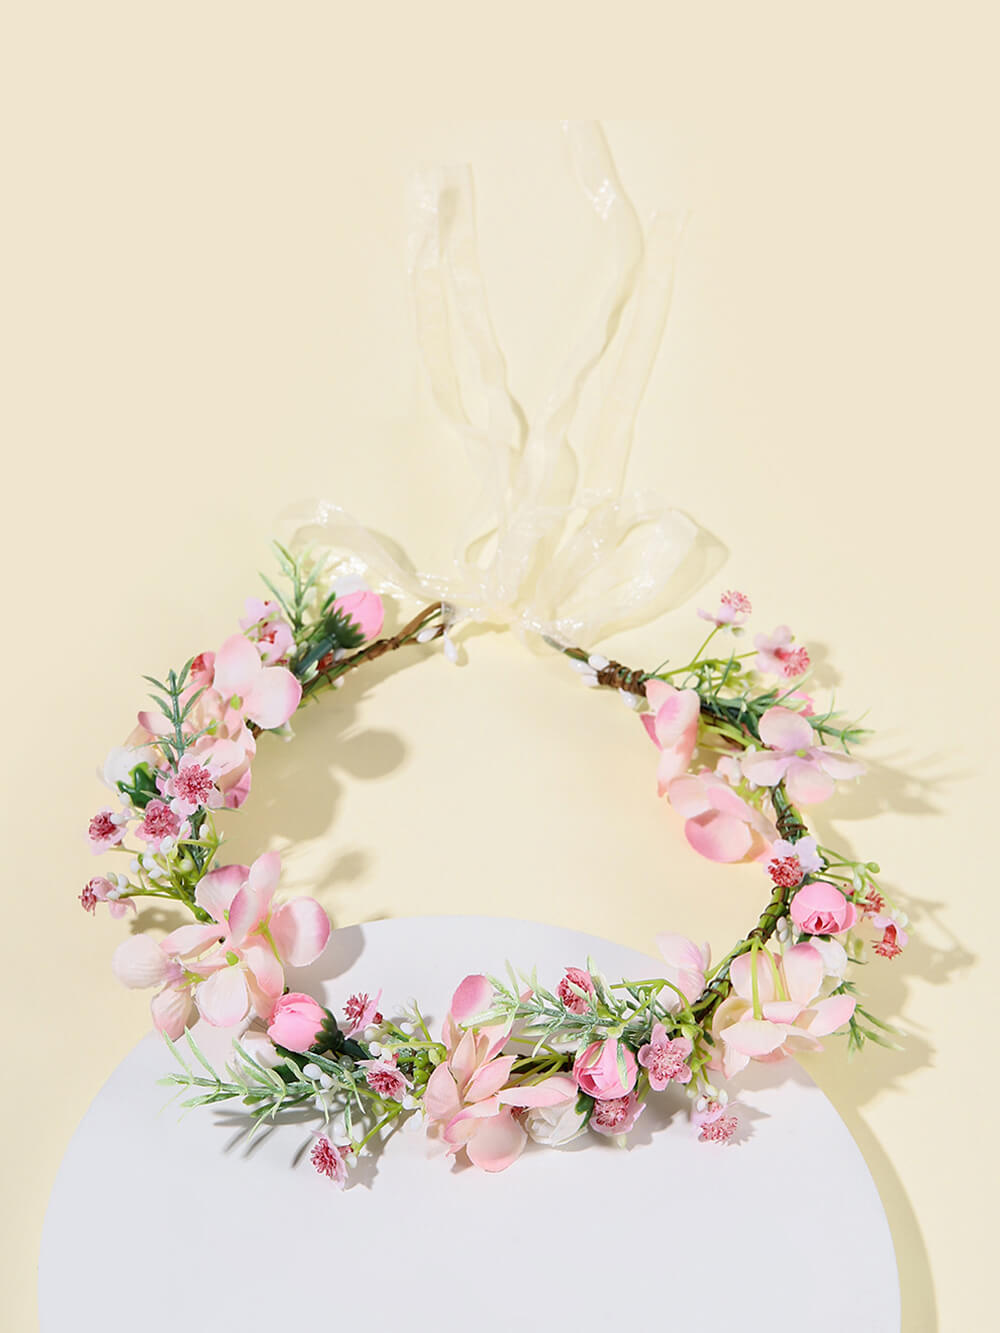 Corona de flores nupciales - Pétalo de rosa y flor de melocotón